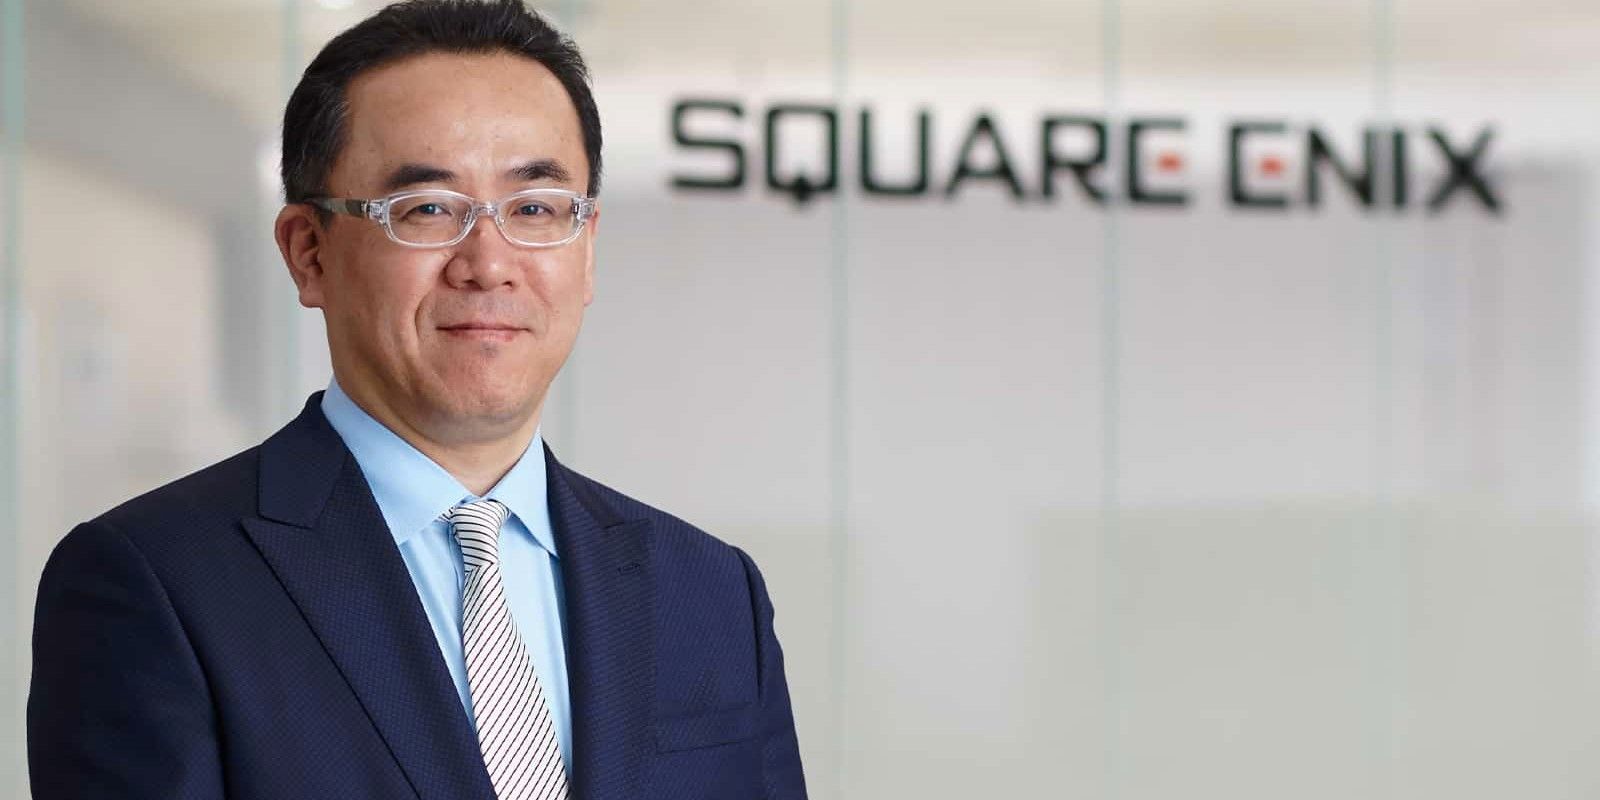 El presidente de Square Enix comienza el 2022 con una carta NFT sin sentido